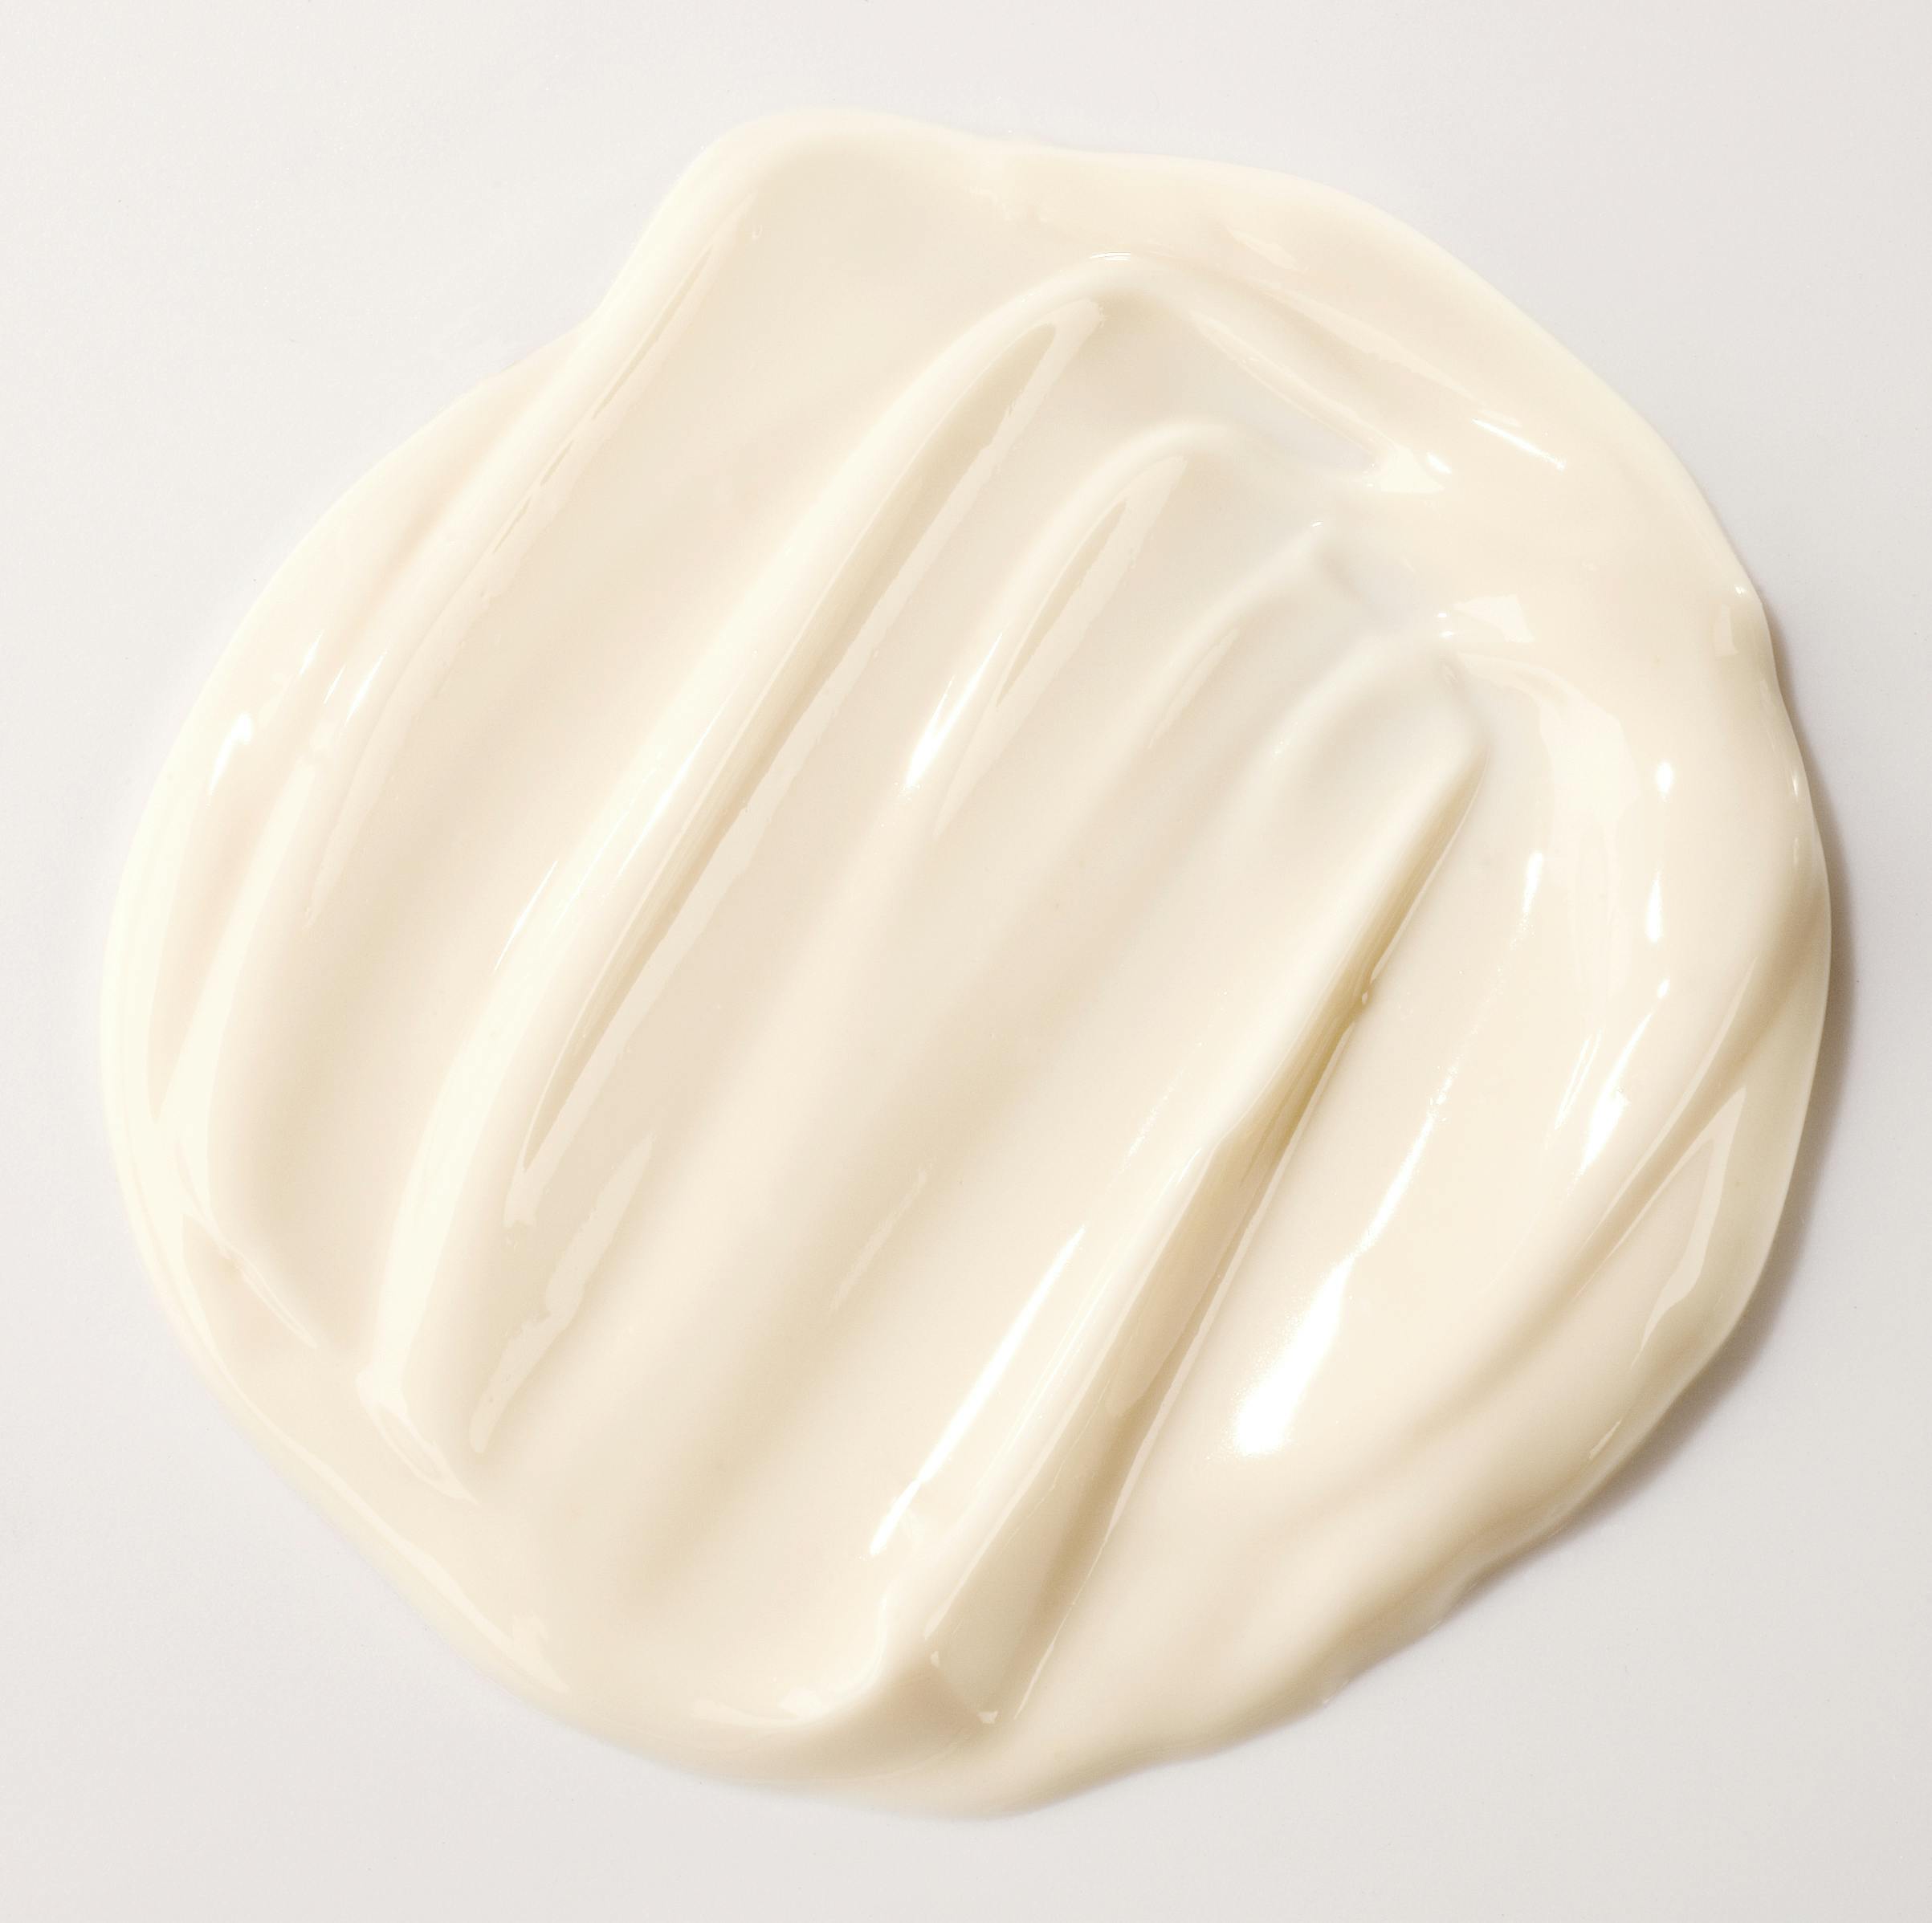 Pale orange cream on a beige background